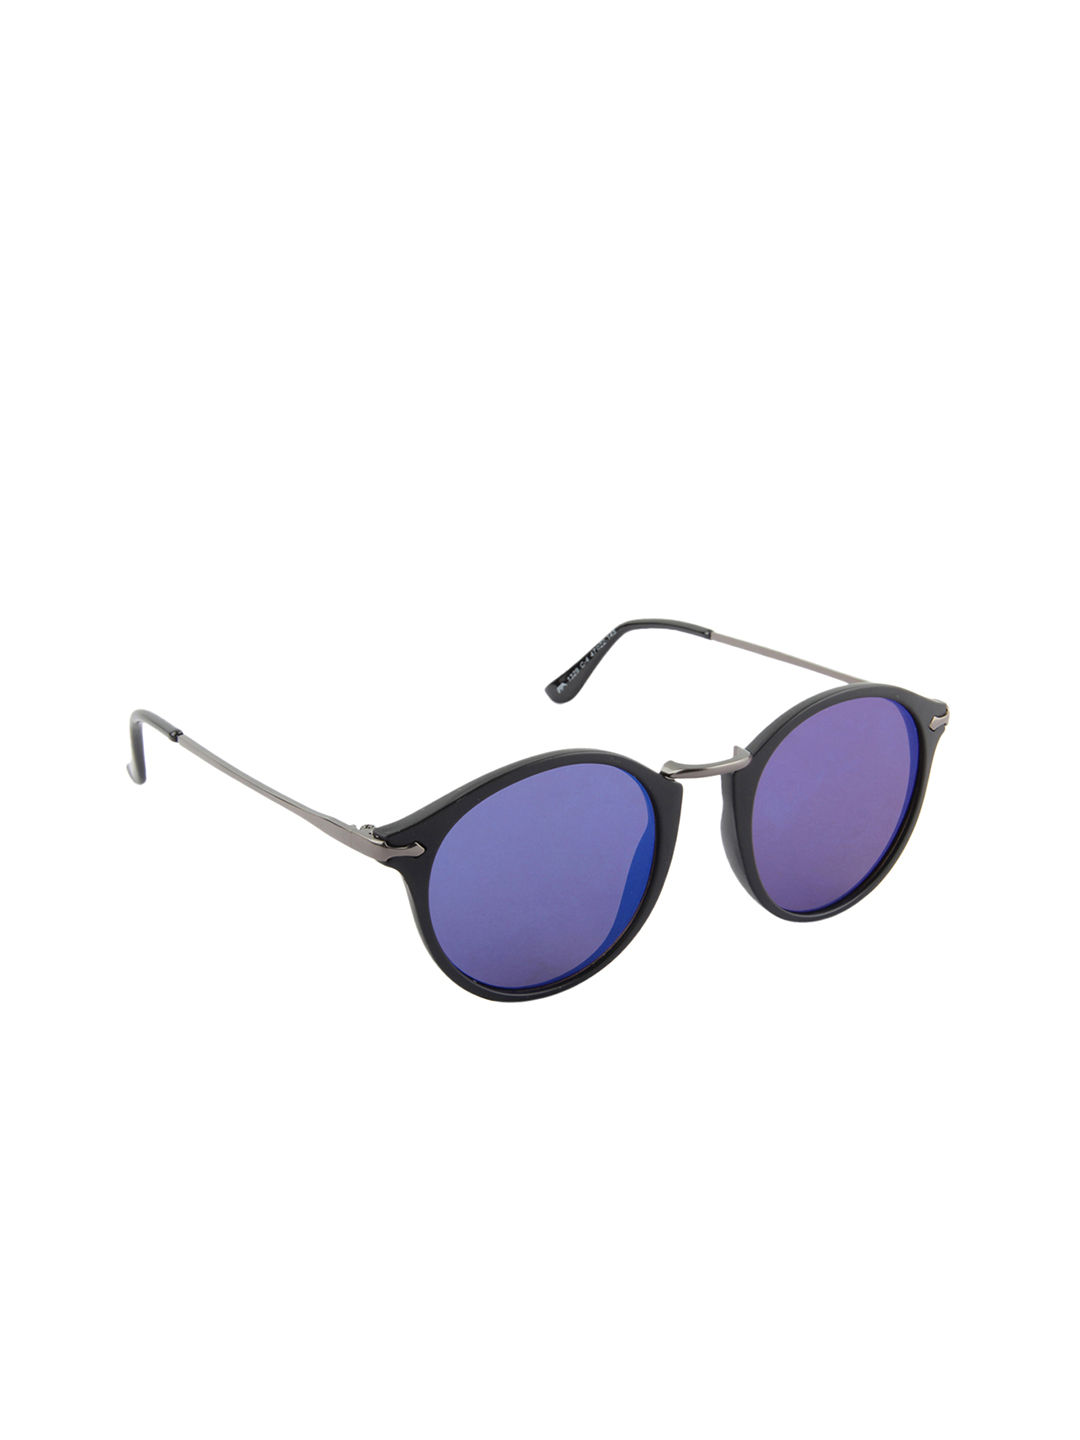 Farenheit Unisex Mirrored Sunglasses SOC-FA-1329-C4